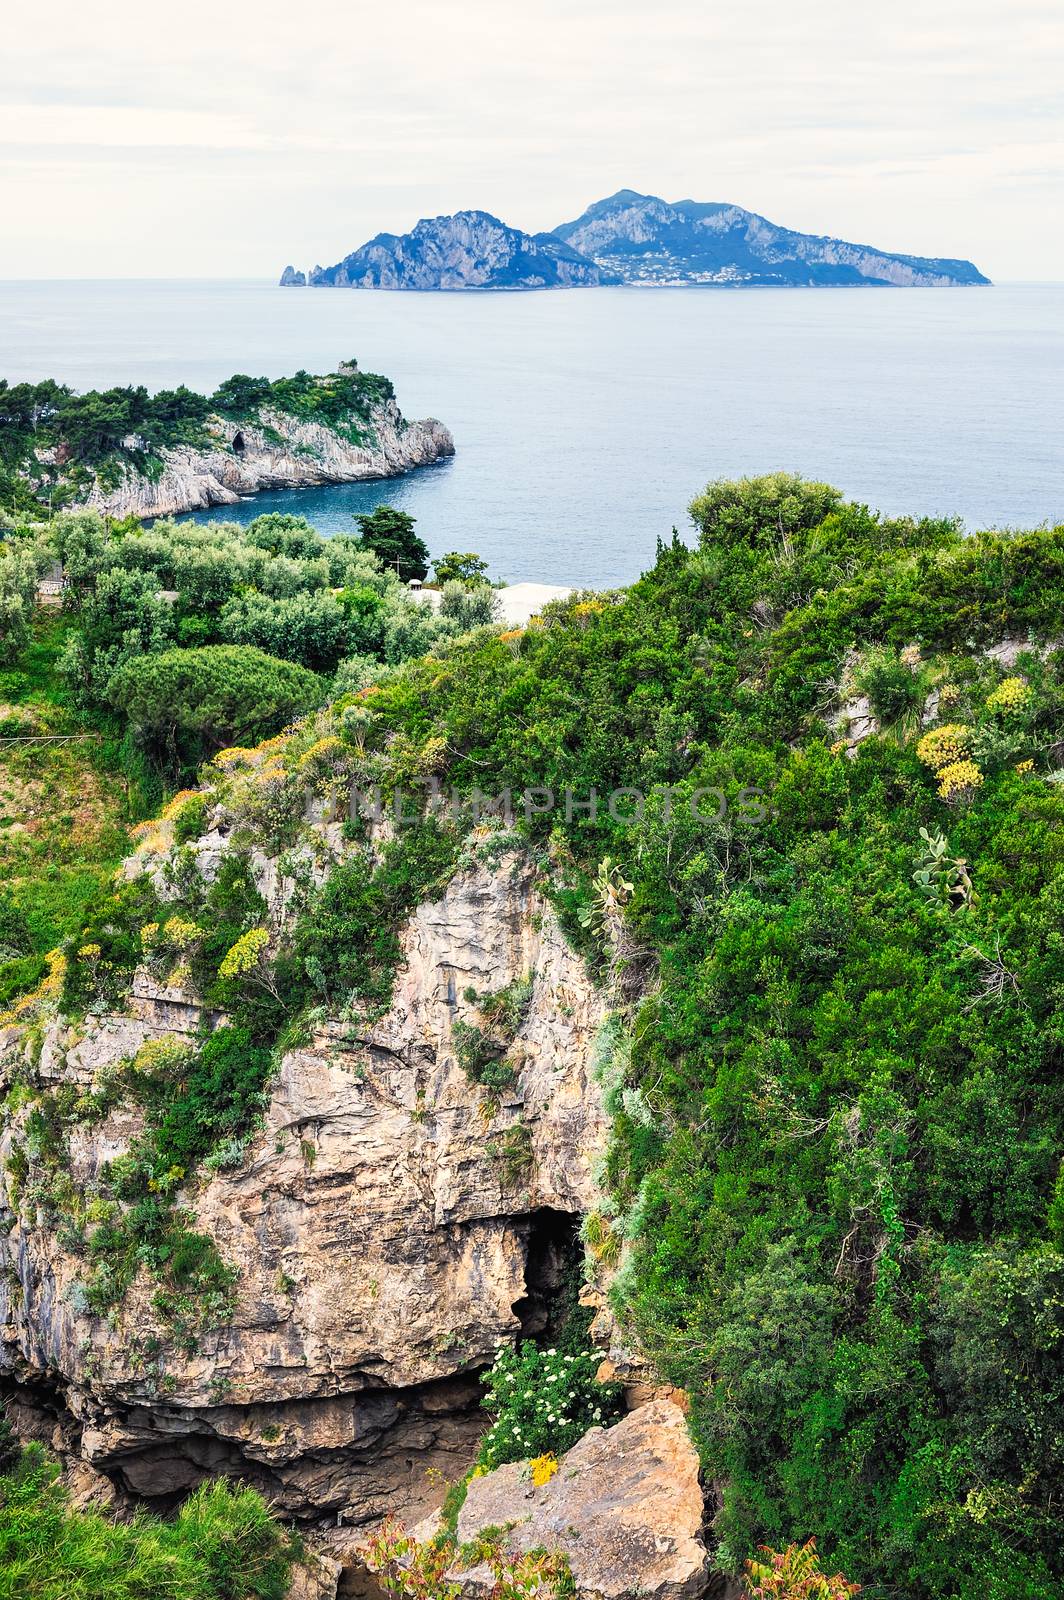 Beautiful Italian nature along the Amalfi Coast